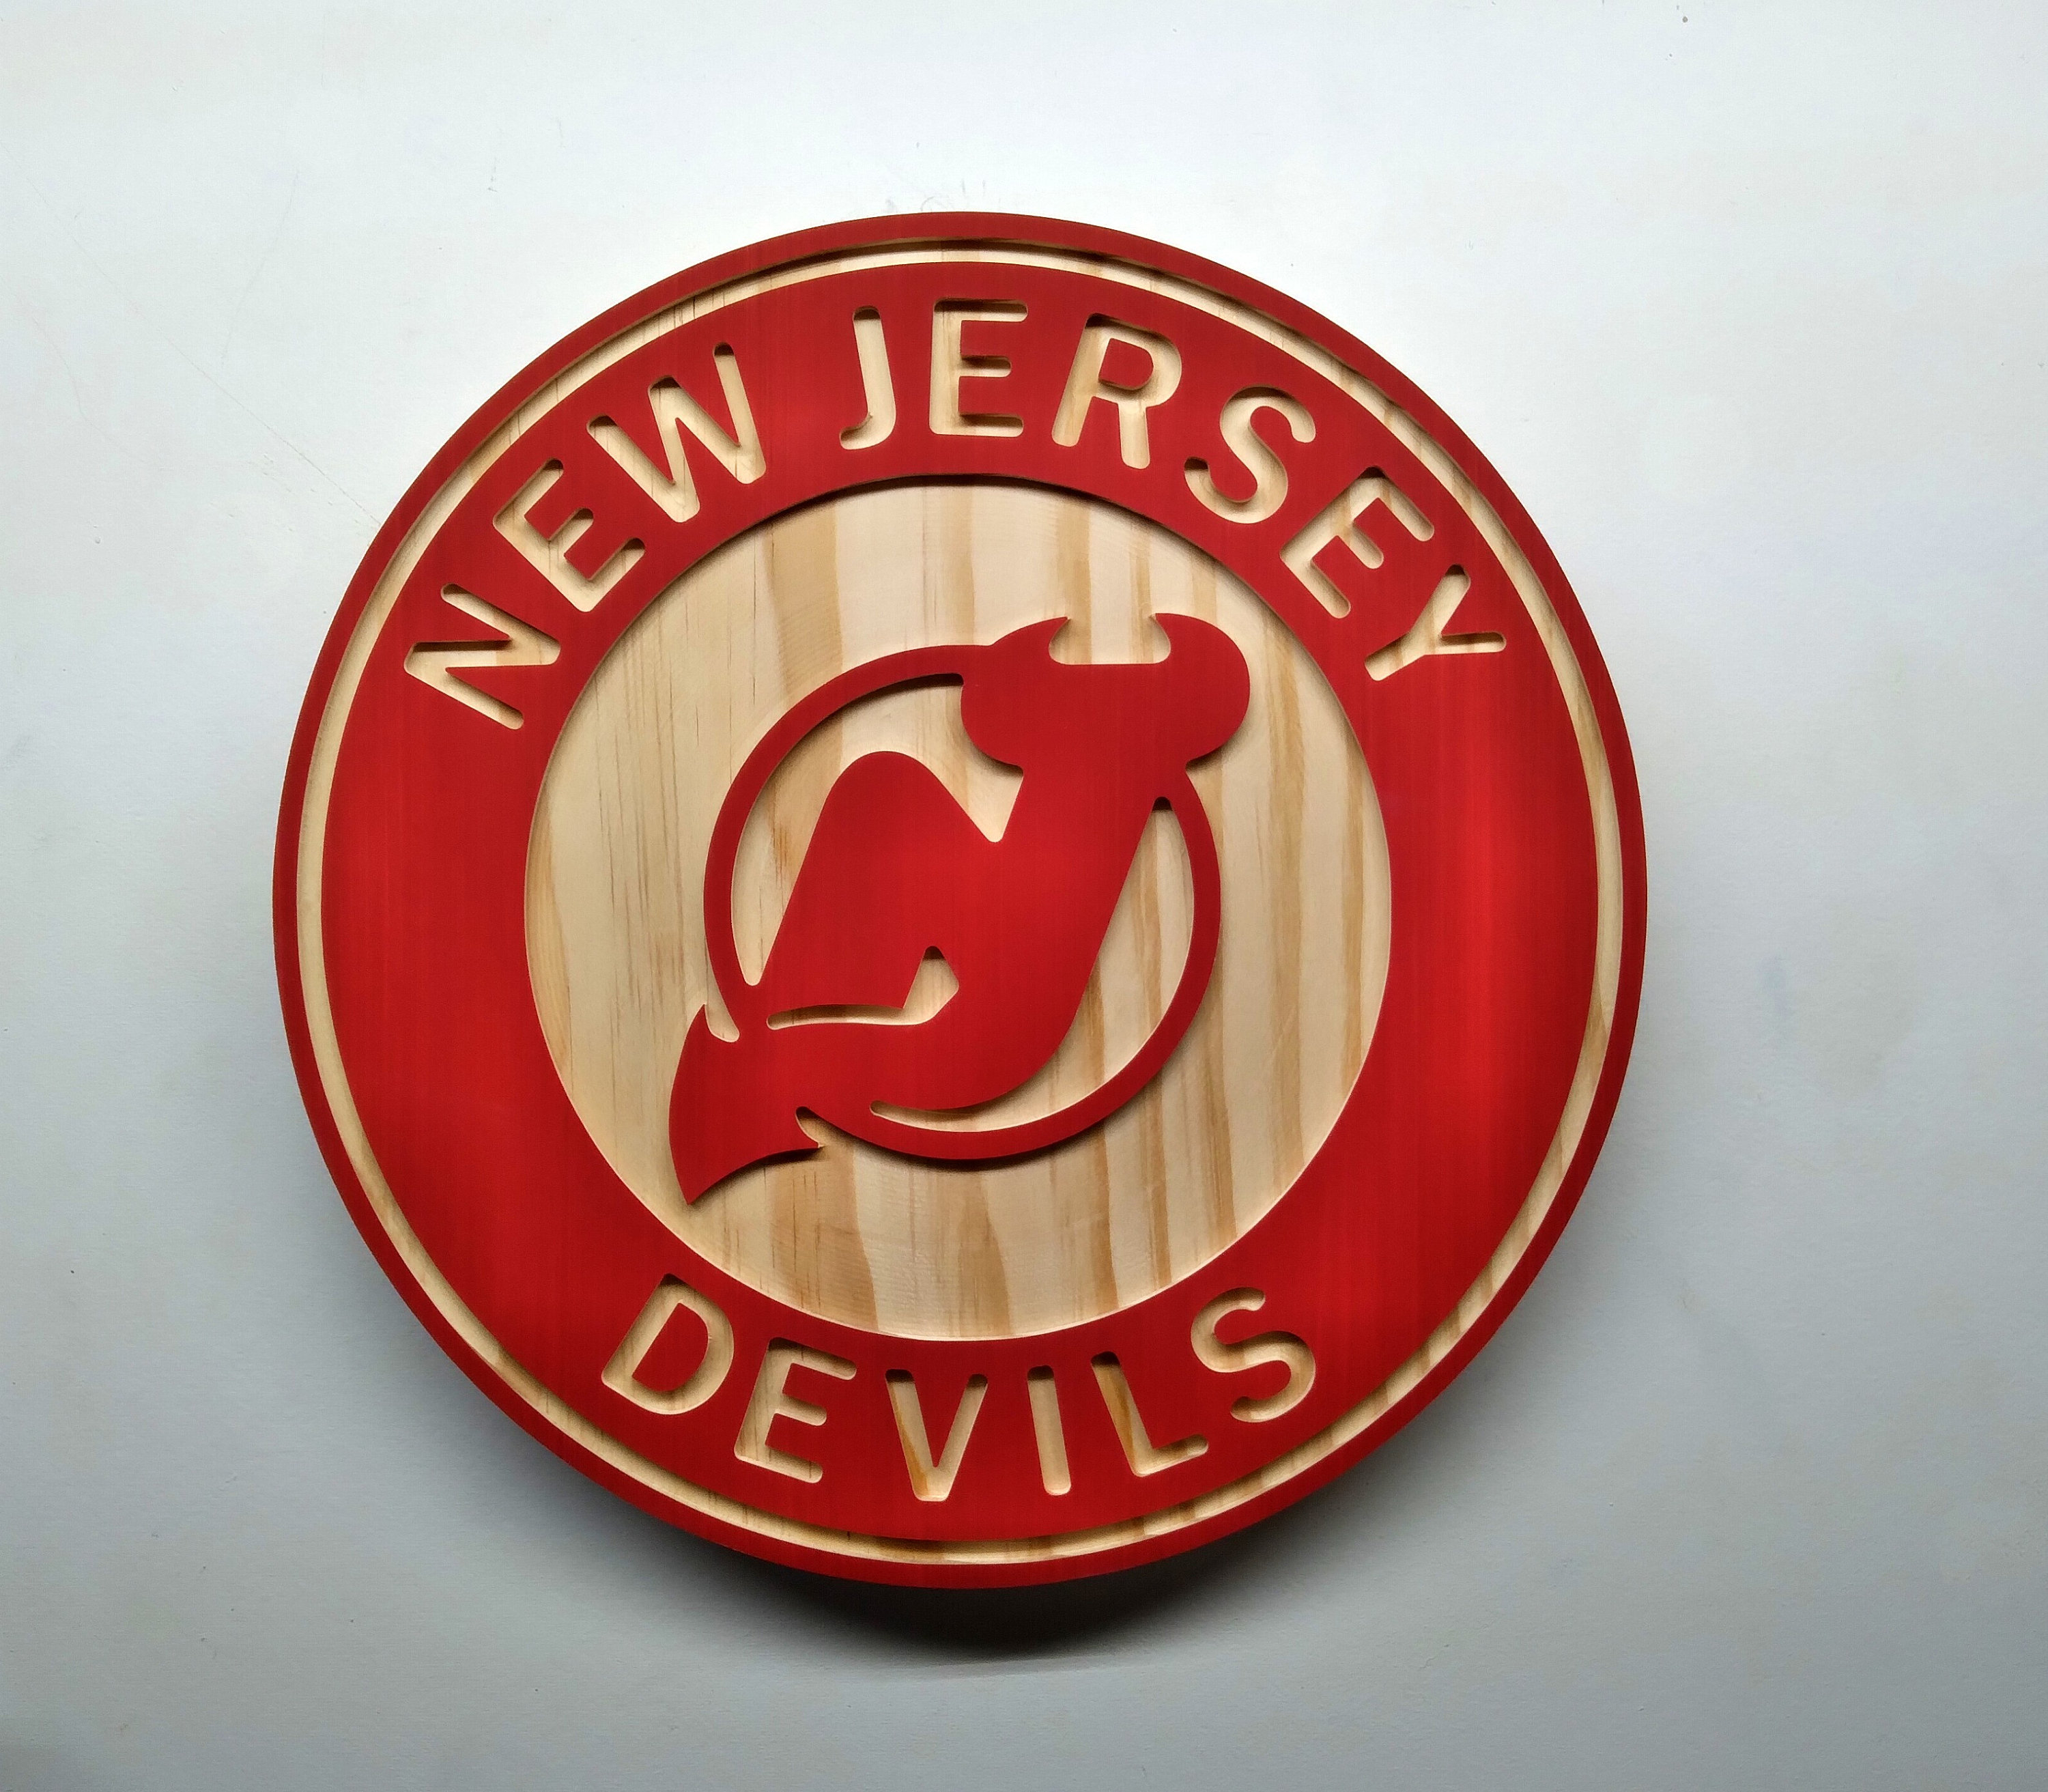 Vintage 90's New Jersey Devils Jersey! Super dope, I - Depop